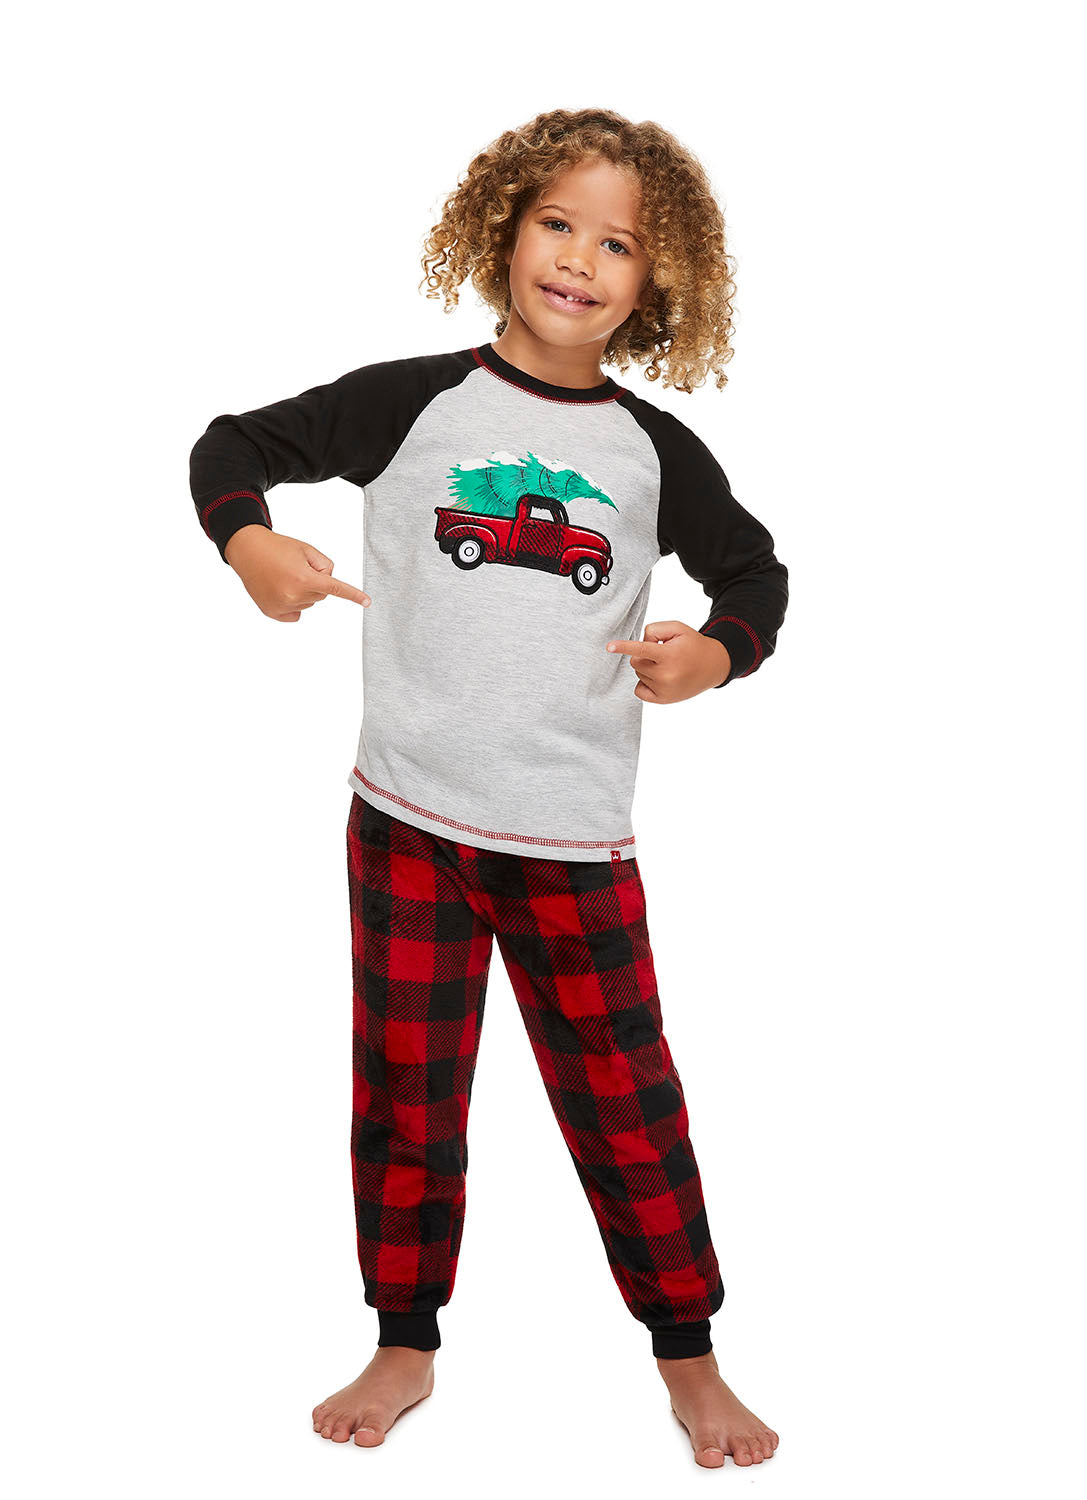 Fun Boy wearing Red Truck Pajama Set